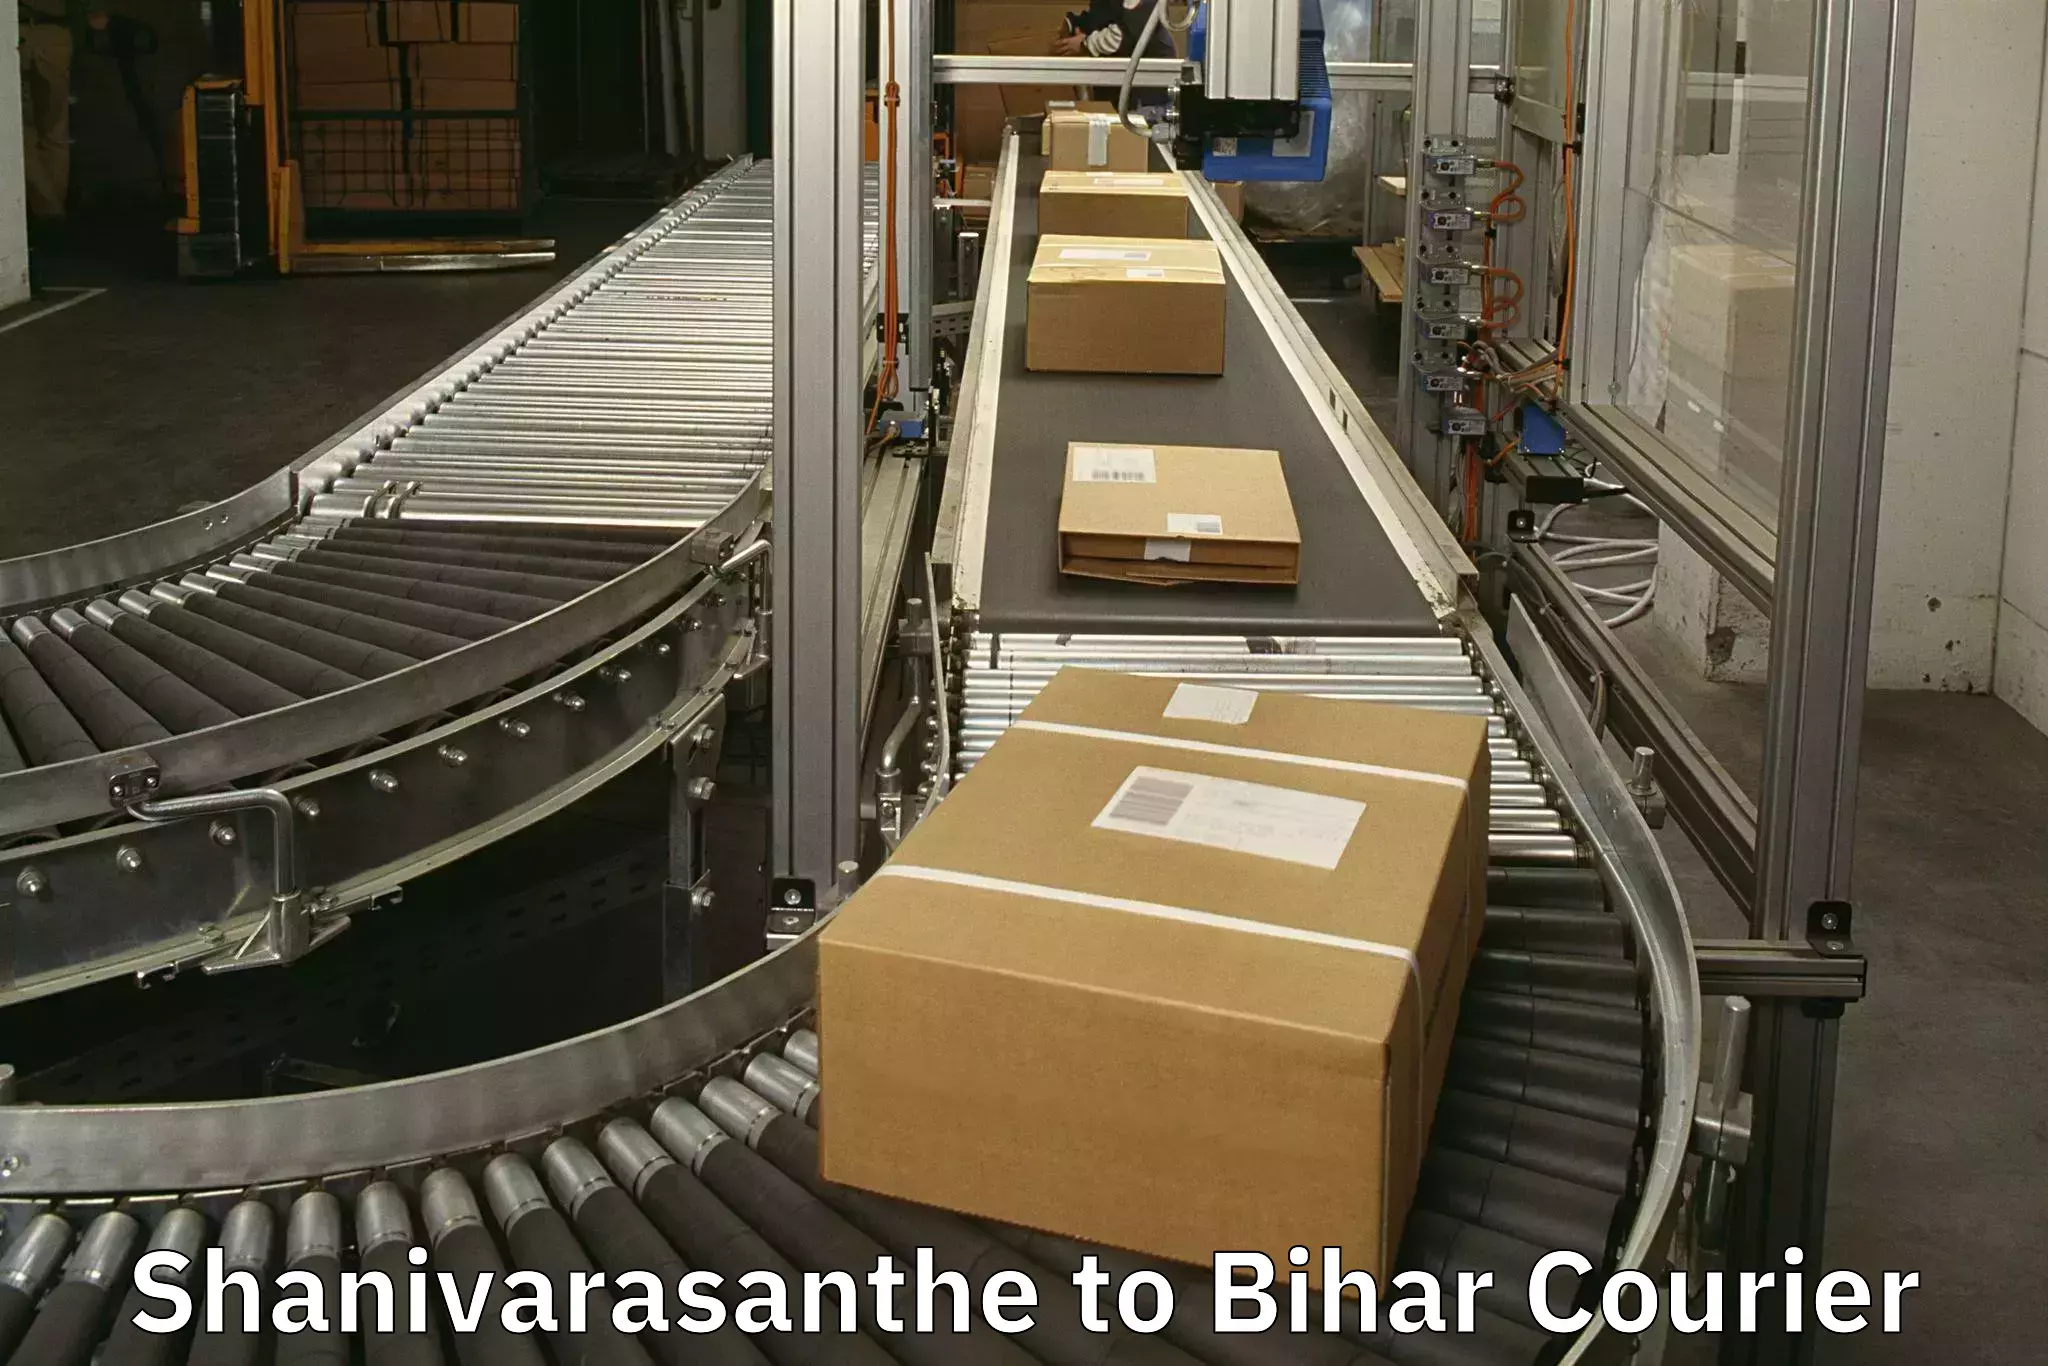 Luggage shipment specialists Shanivarasanthe to Mahaddipur